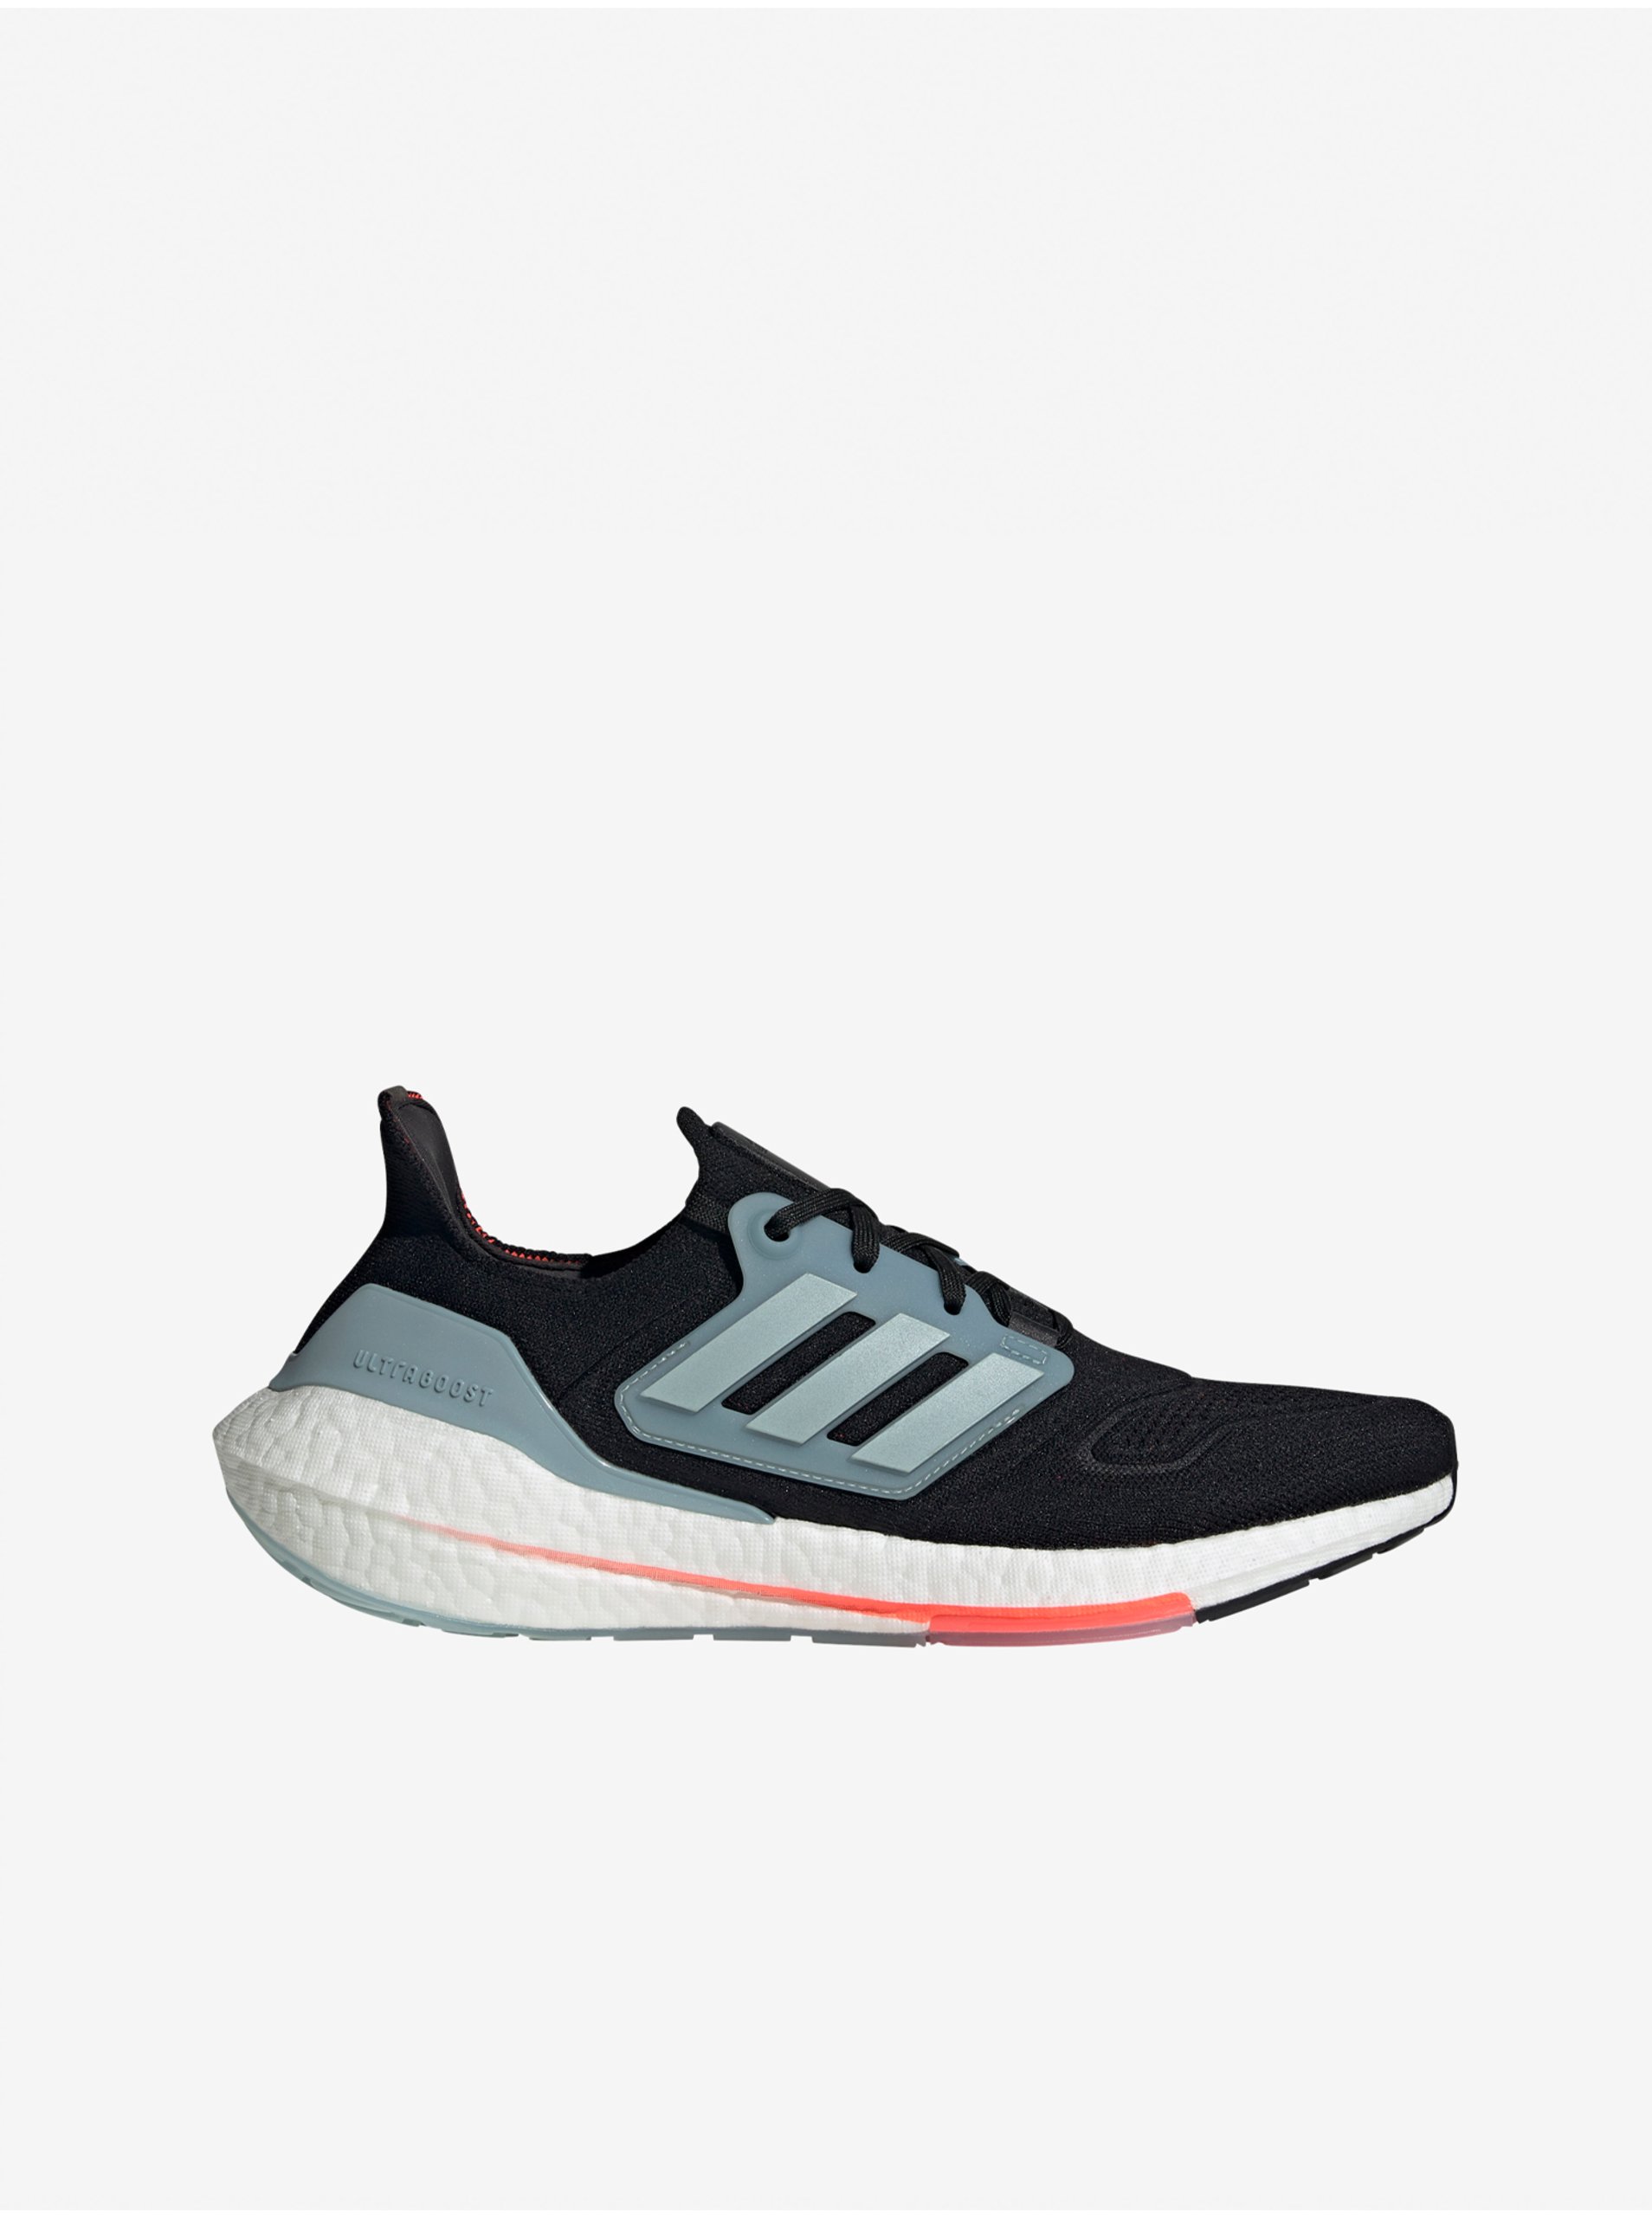 E-shop Modro-černé pánské běžecké boty adidas Performance Ultraboost 22